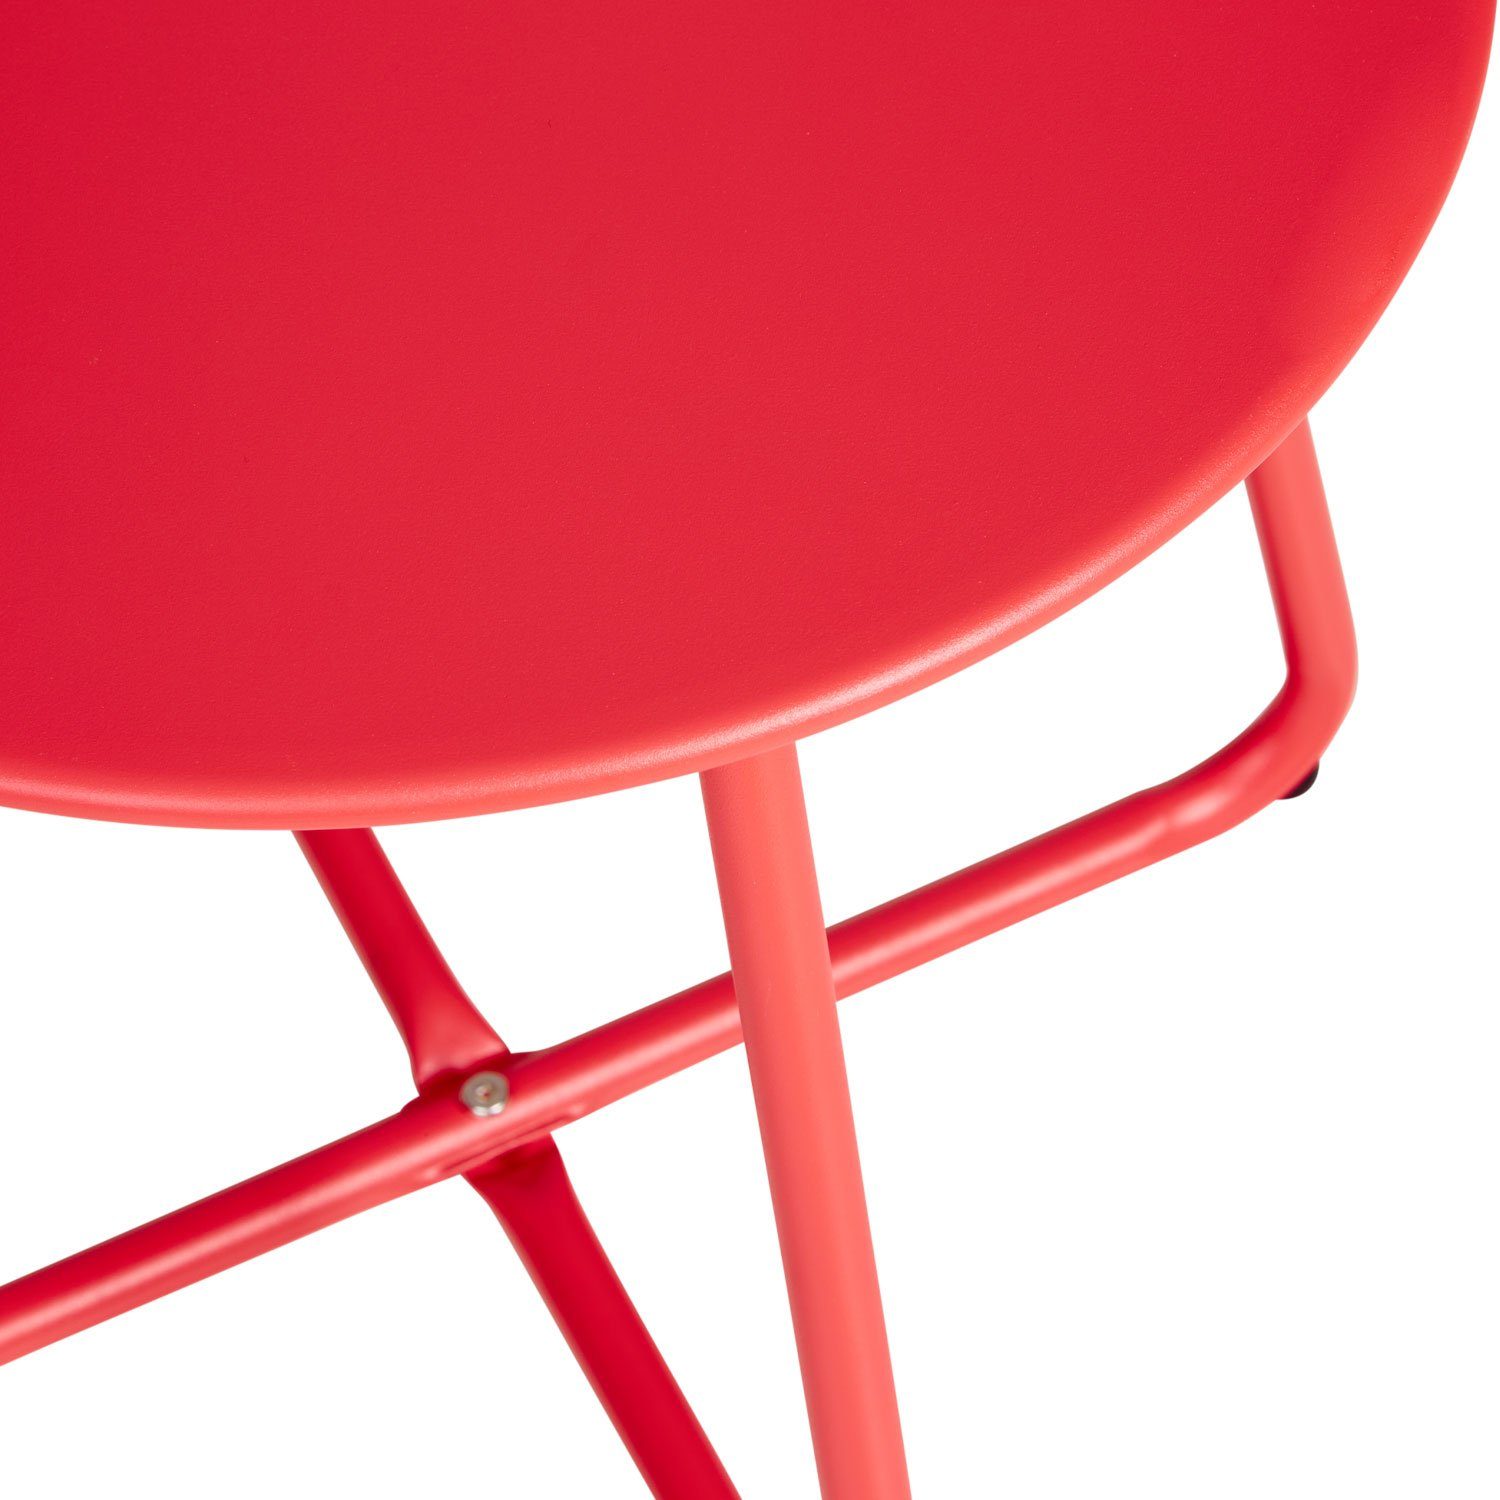 Gartentisch Homestyle4u | Set) Beistelltisch rot rot | Rund Metall rot Tisch (kein Kaffeetisch